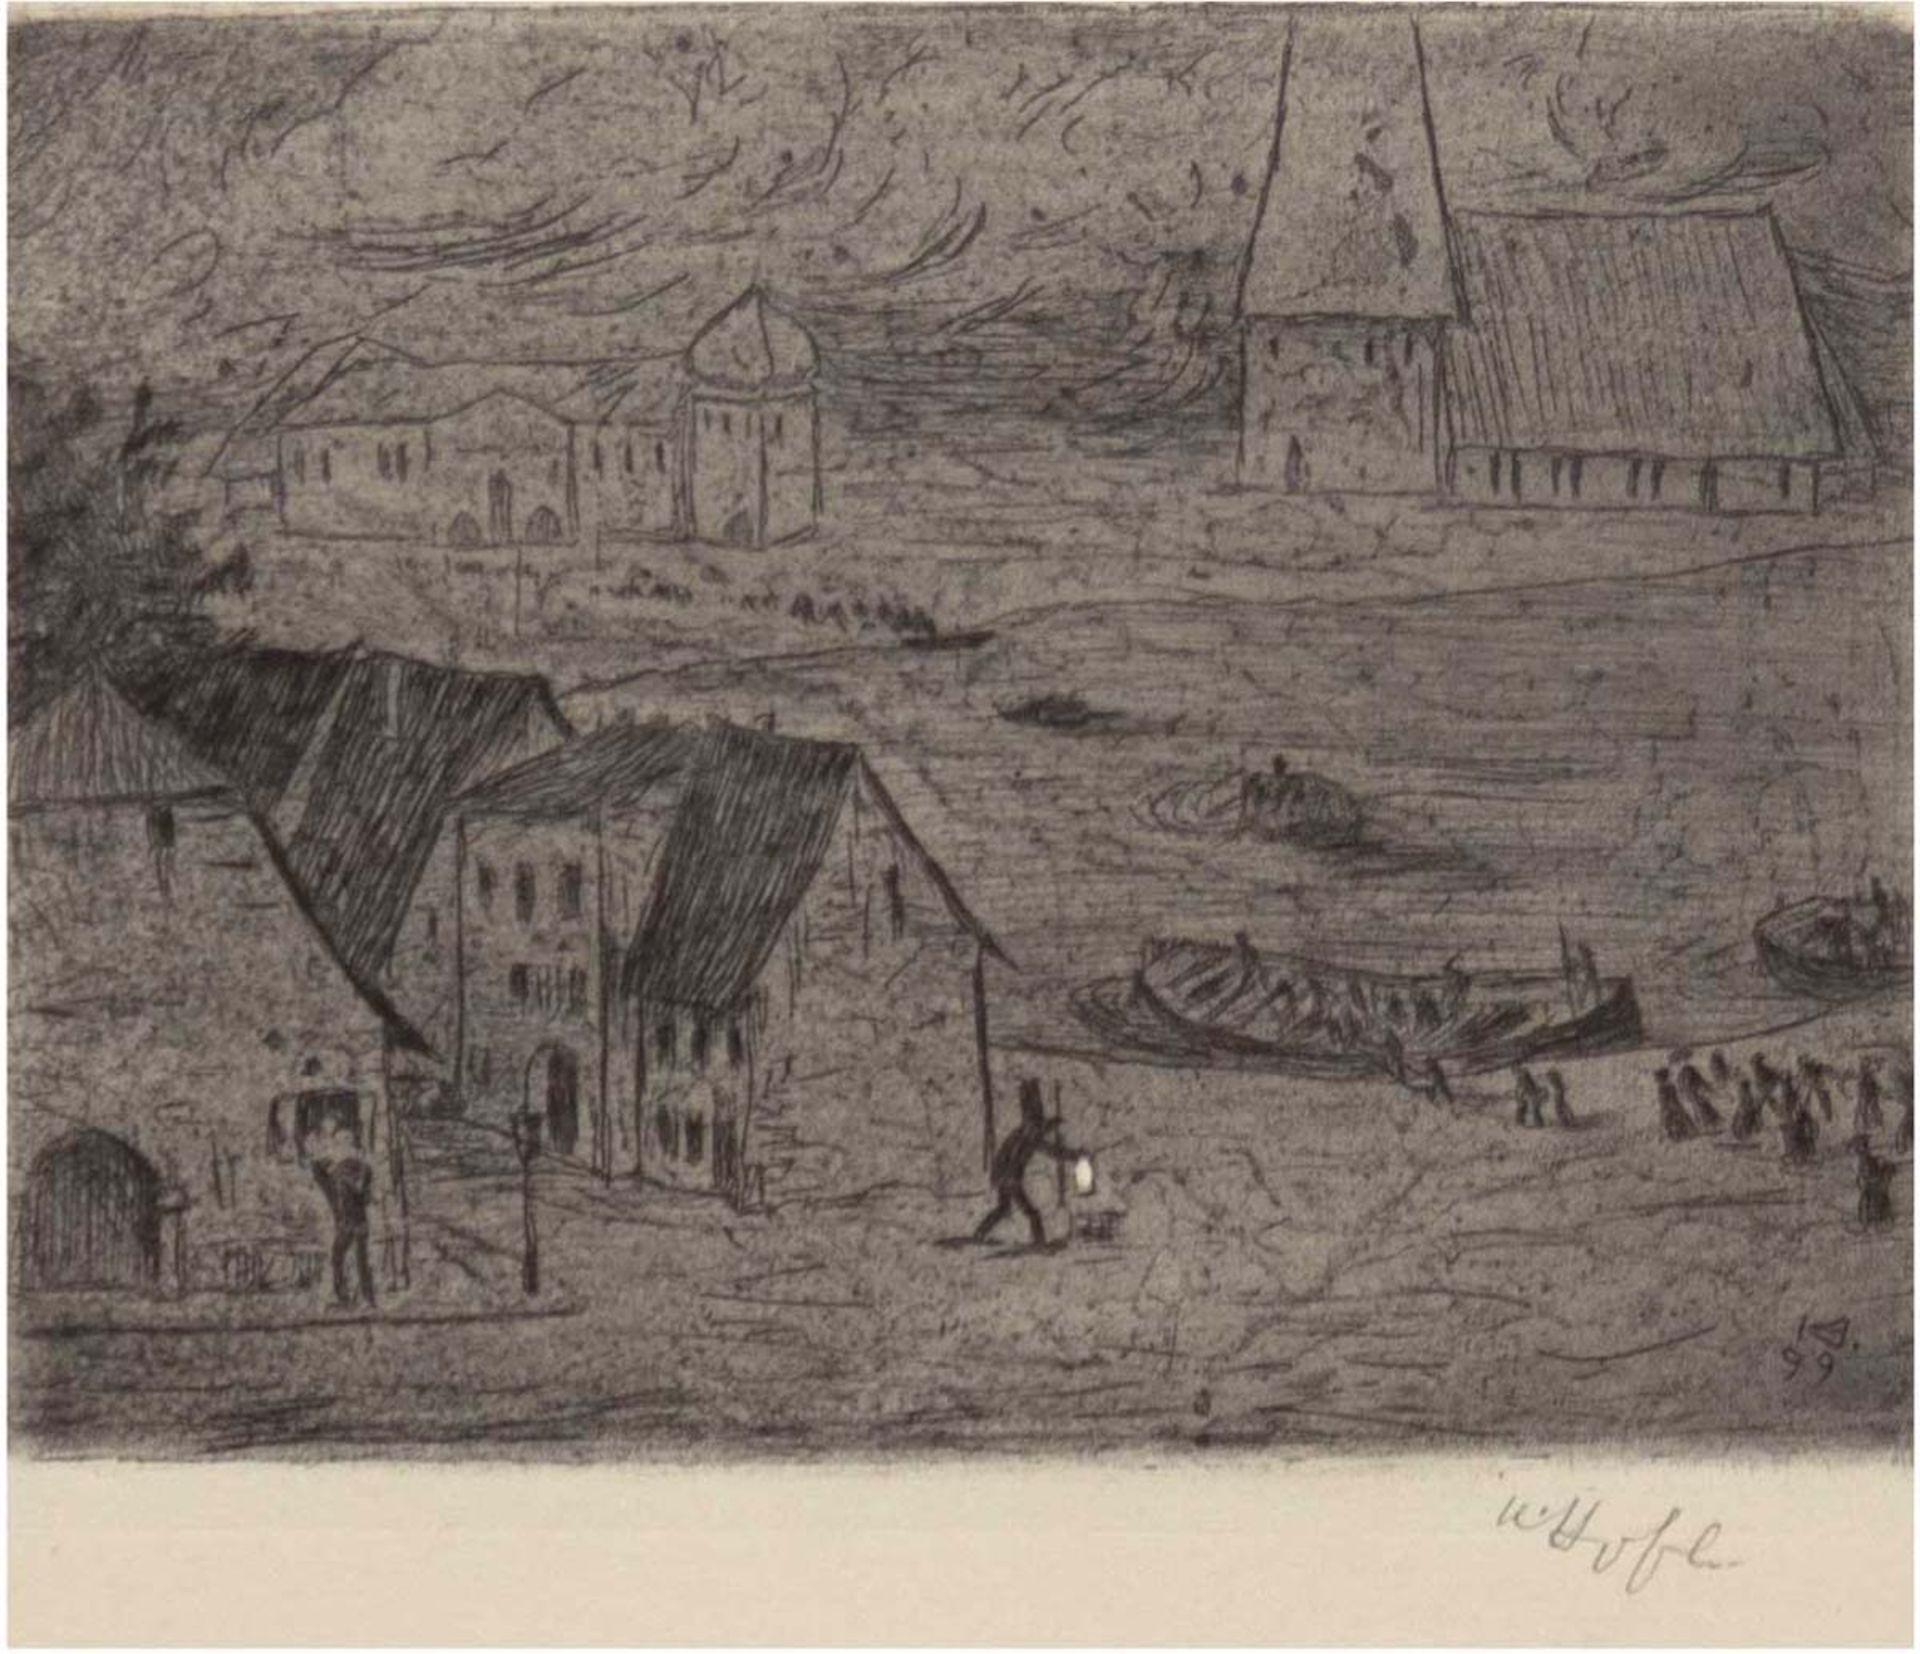 Hofer, Karl (1878-1955) "Nächtliche Überfahrt", Radierung auf Papier, 1899, sign. untenrechts, WVZ